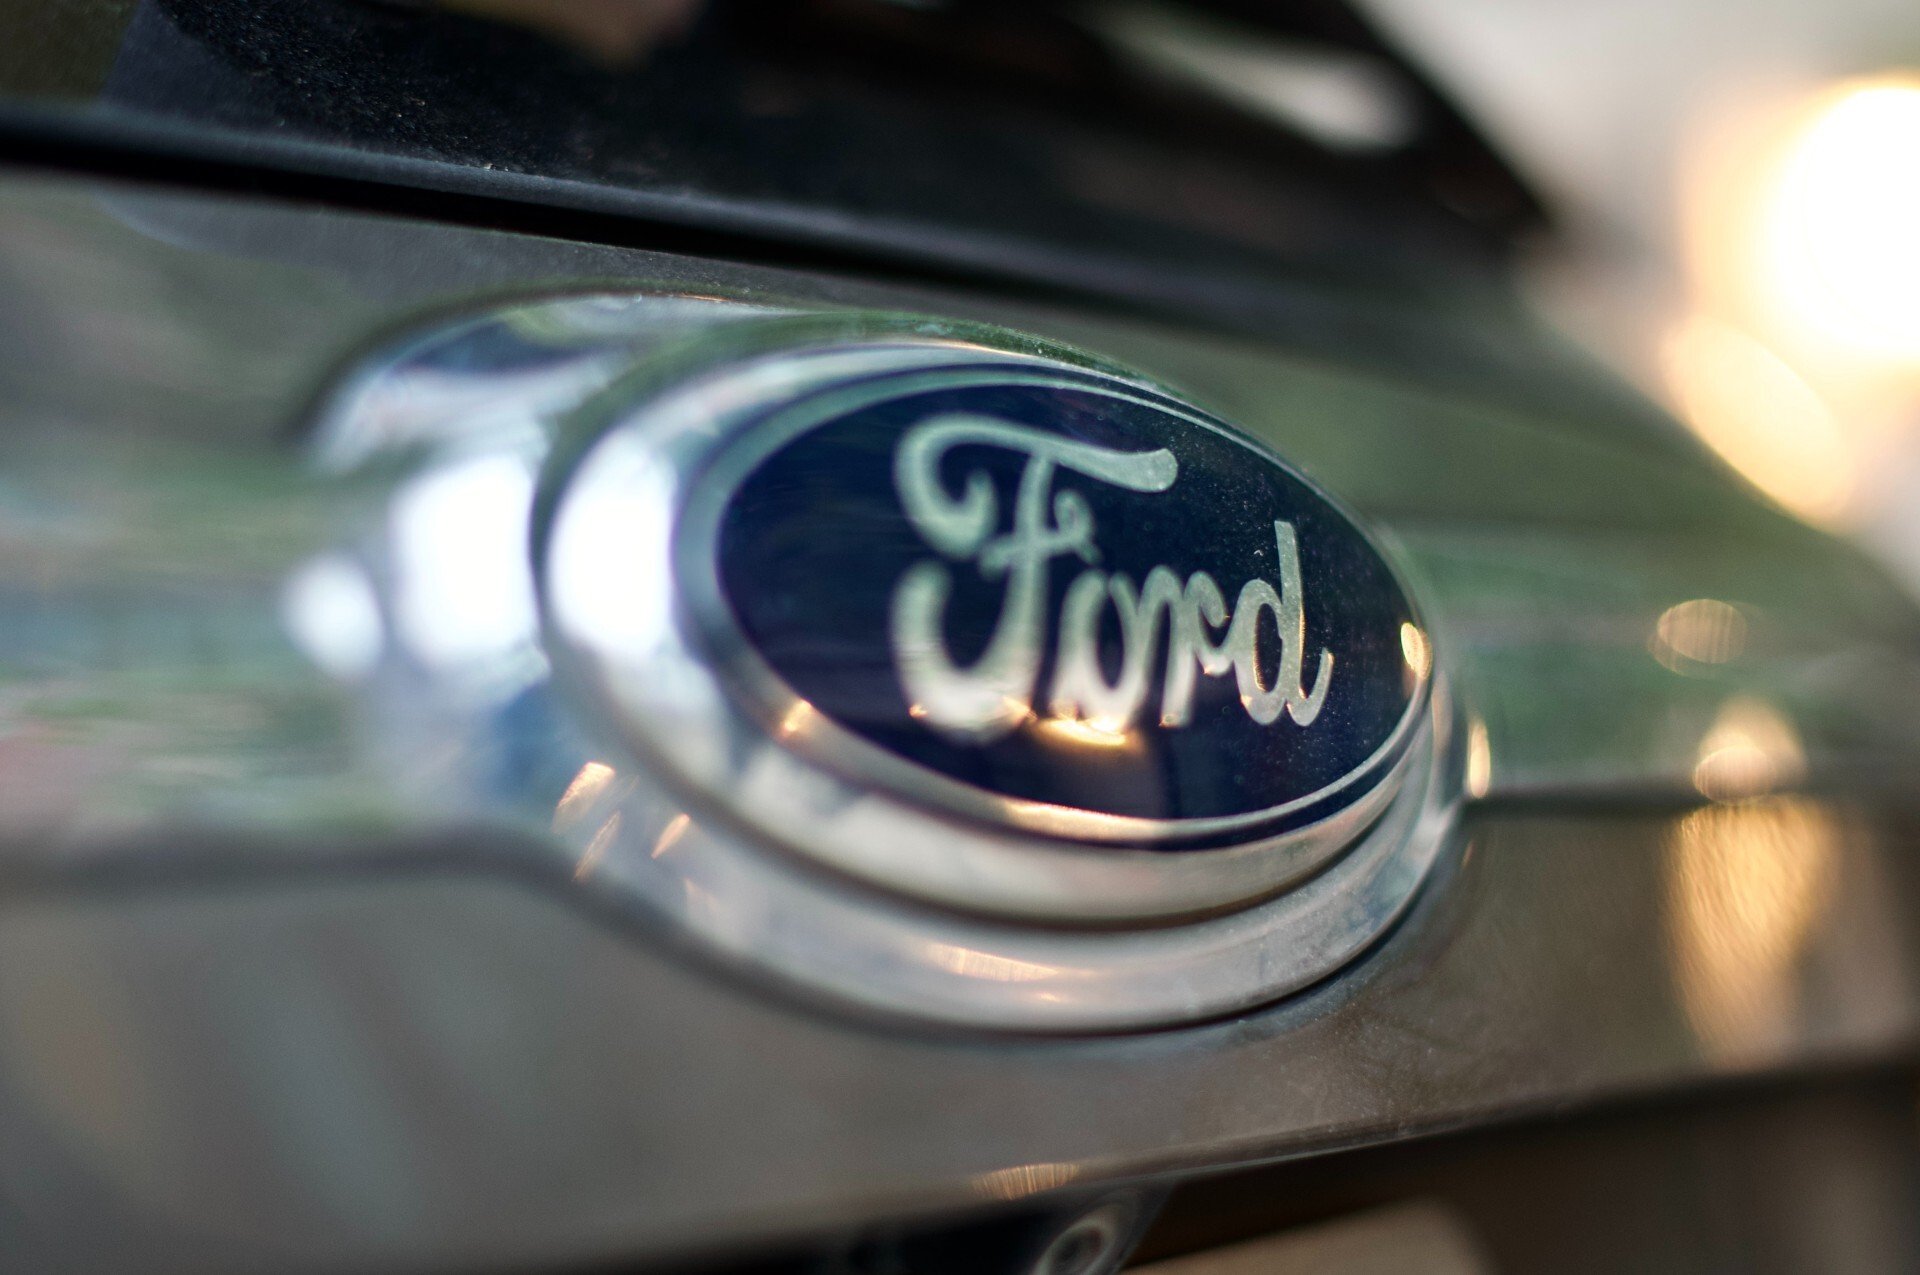 Ford obmedzí výrobu v Európe. O predaji nemeckej fabriky údajne rokuje s Číňanmi